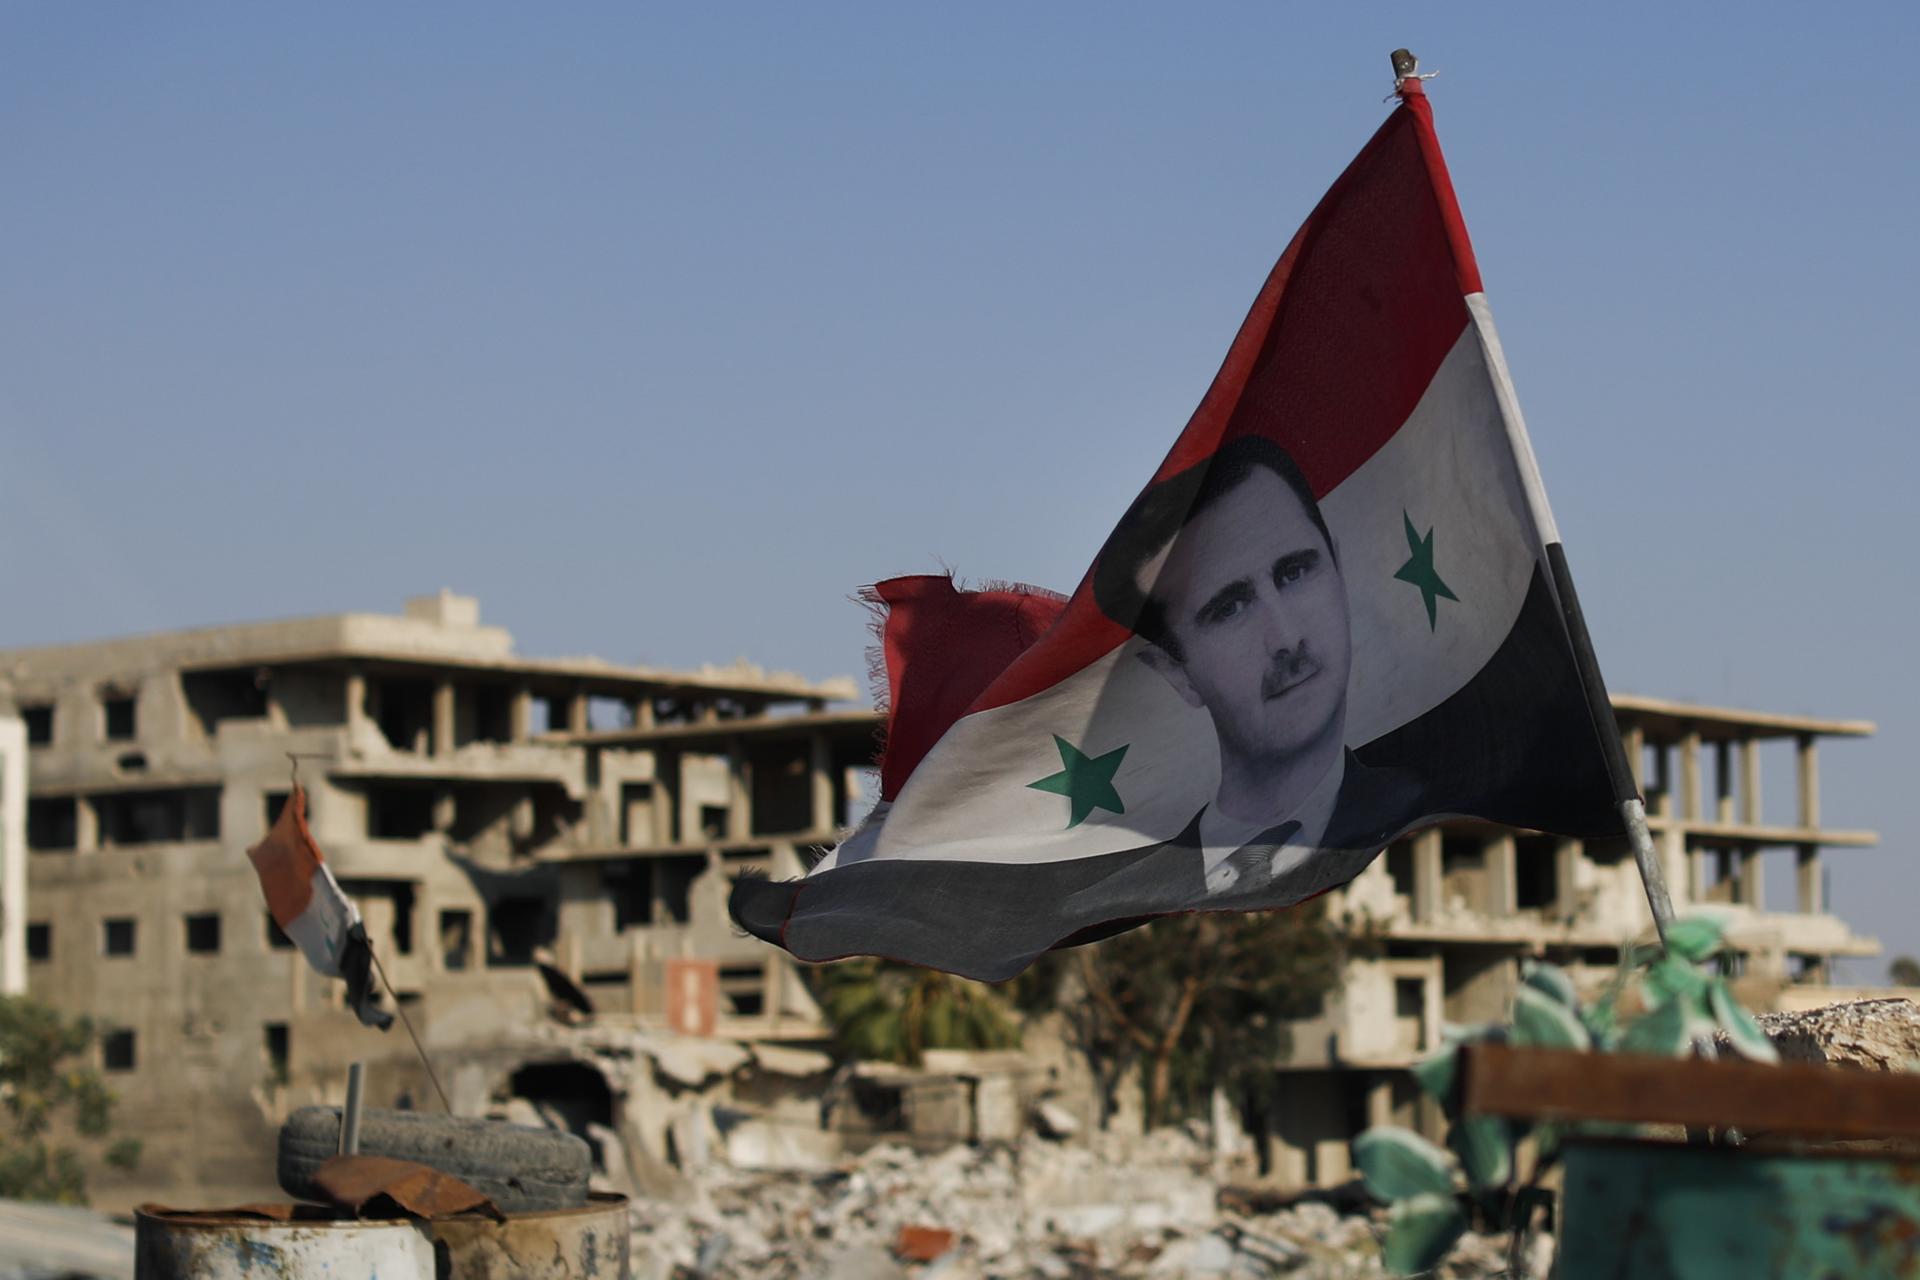 Sýrska vlajka s portrétom prezidenta Baššára al-Asada na vojenskom stanovišti. Režim sa snaží vyvolať u ľudí pocit, že prezident Asad s podporou Ruska a Iránu porazil sýrsku opozíciu.